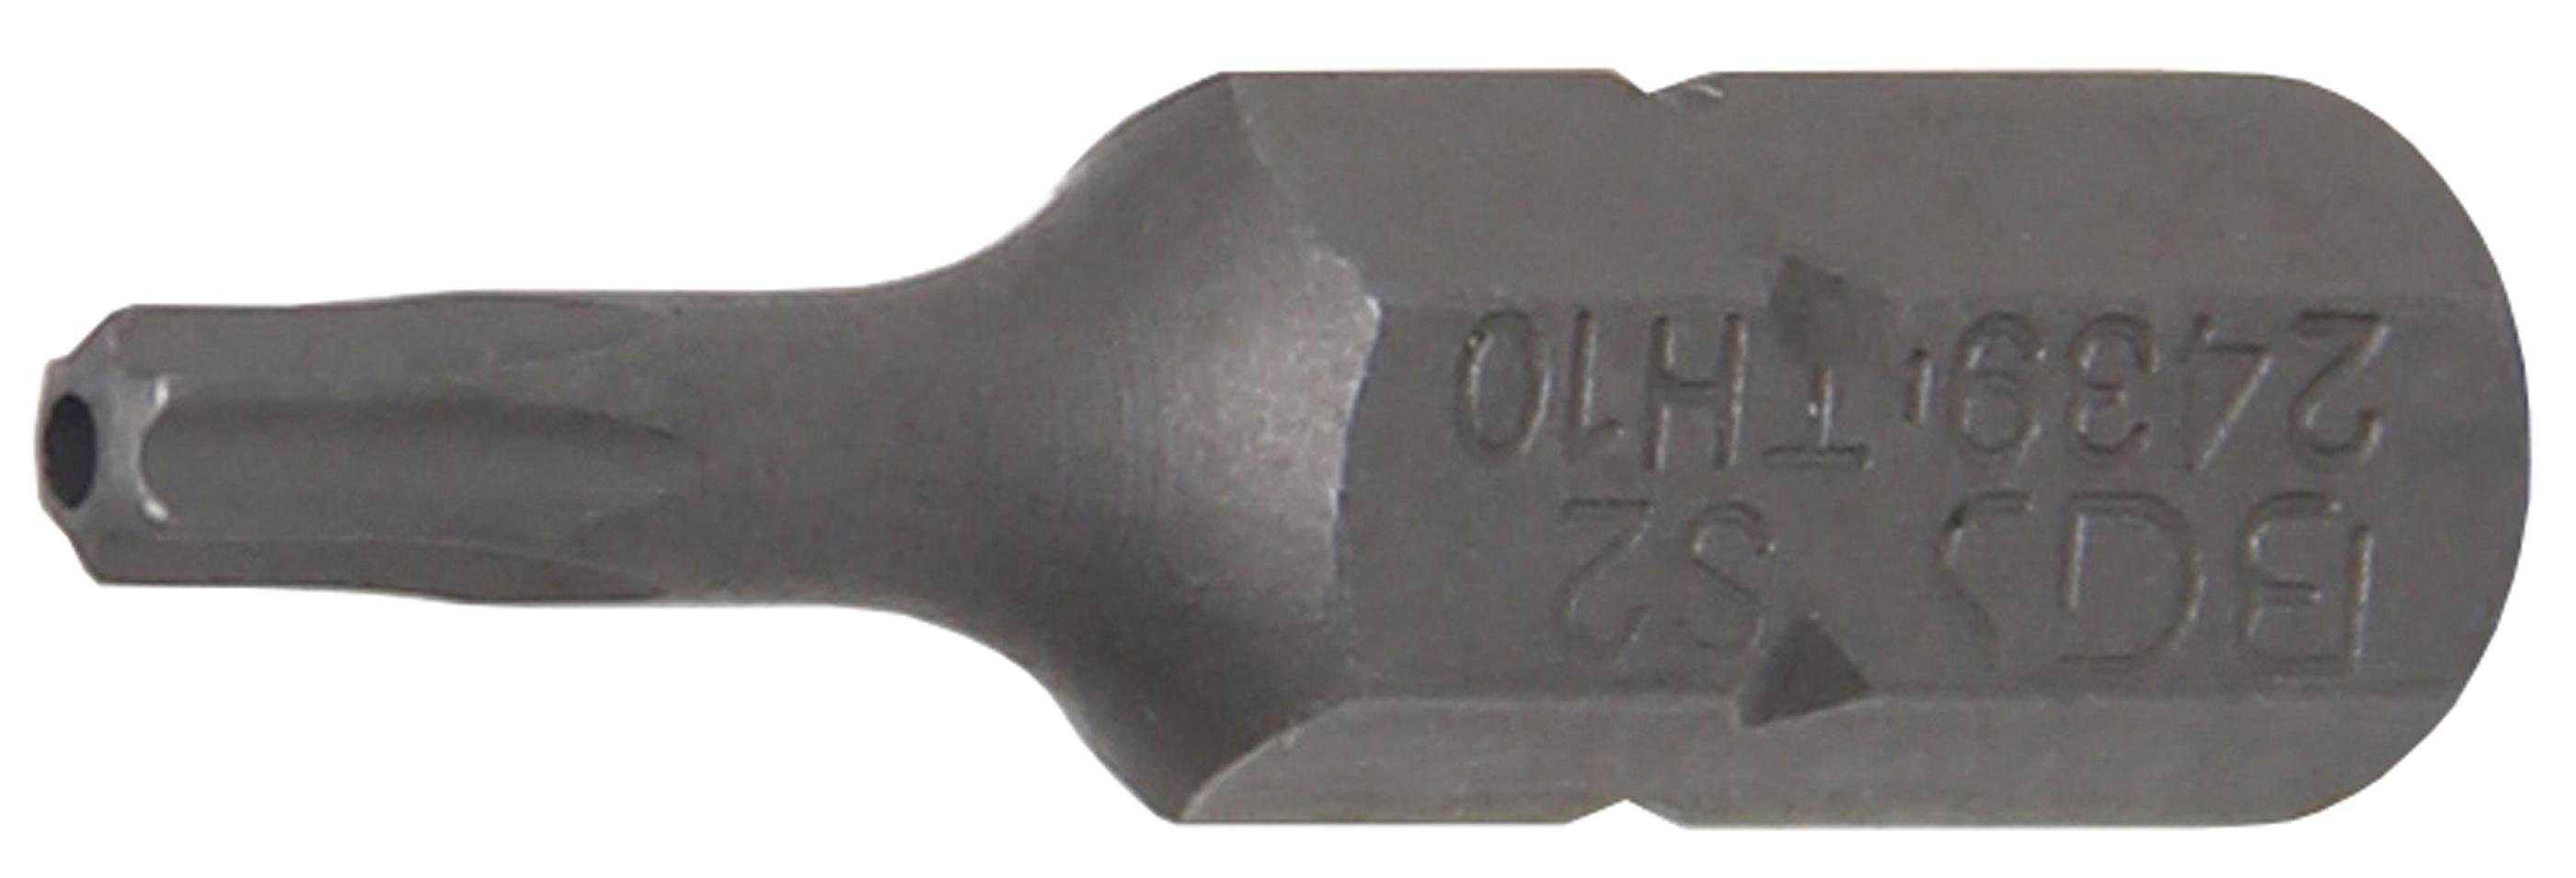 BGS technic Bit-Schraubendreher Bit, Länge 25 mm, Antrieb Außensechskant 6,3 mm (1/4), T-Profil (für Torx) mit Bohrung T10